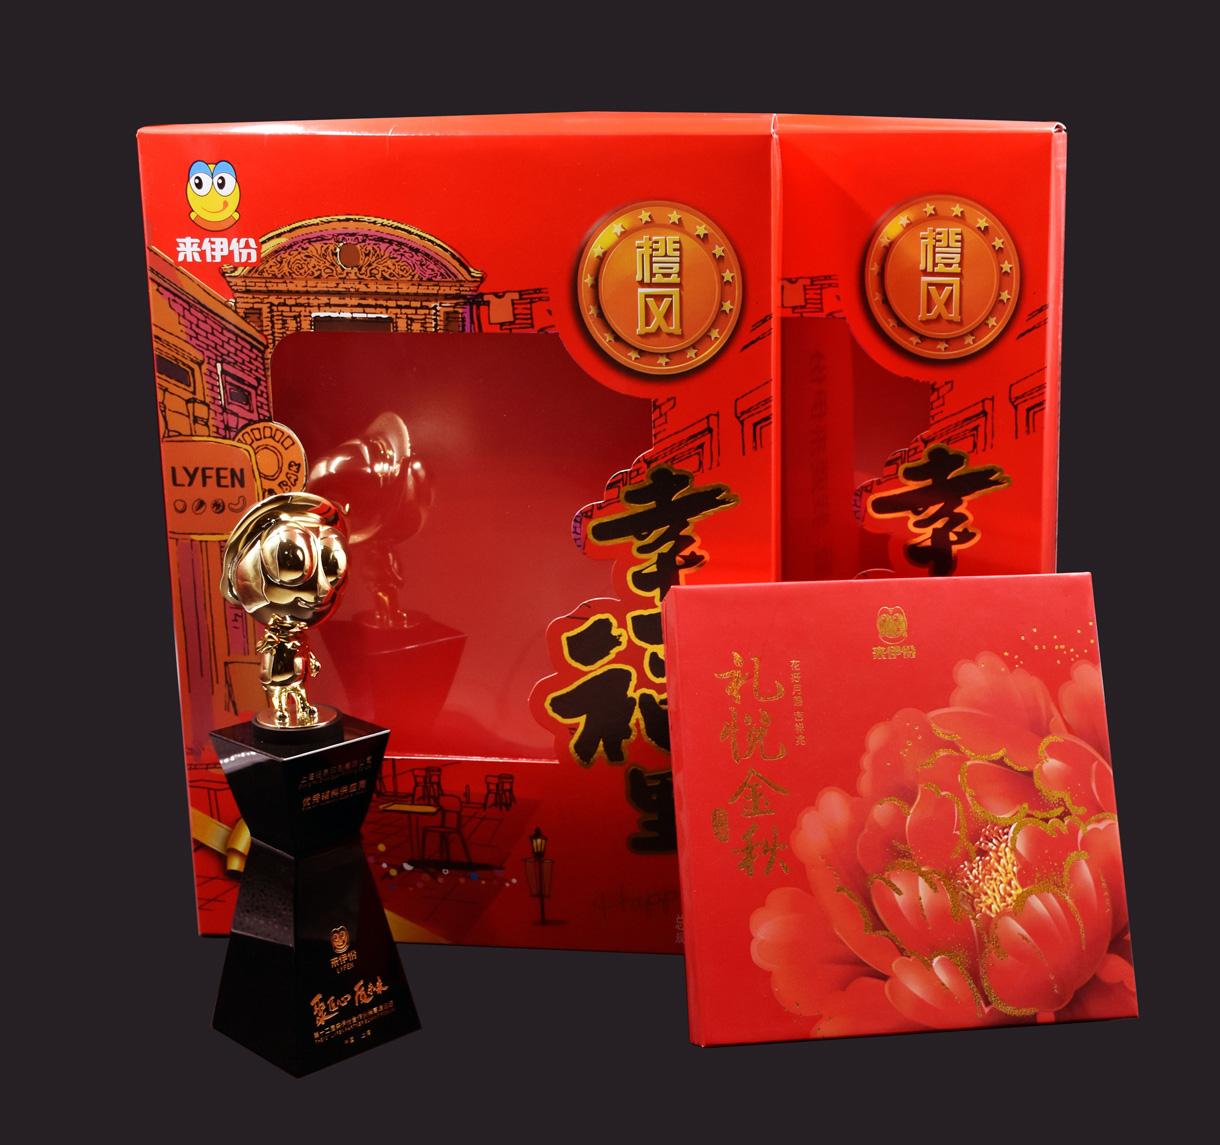 上海昭泉印刷有限公司将参加GPPE上海礼品包装展